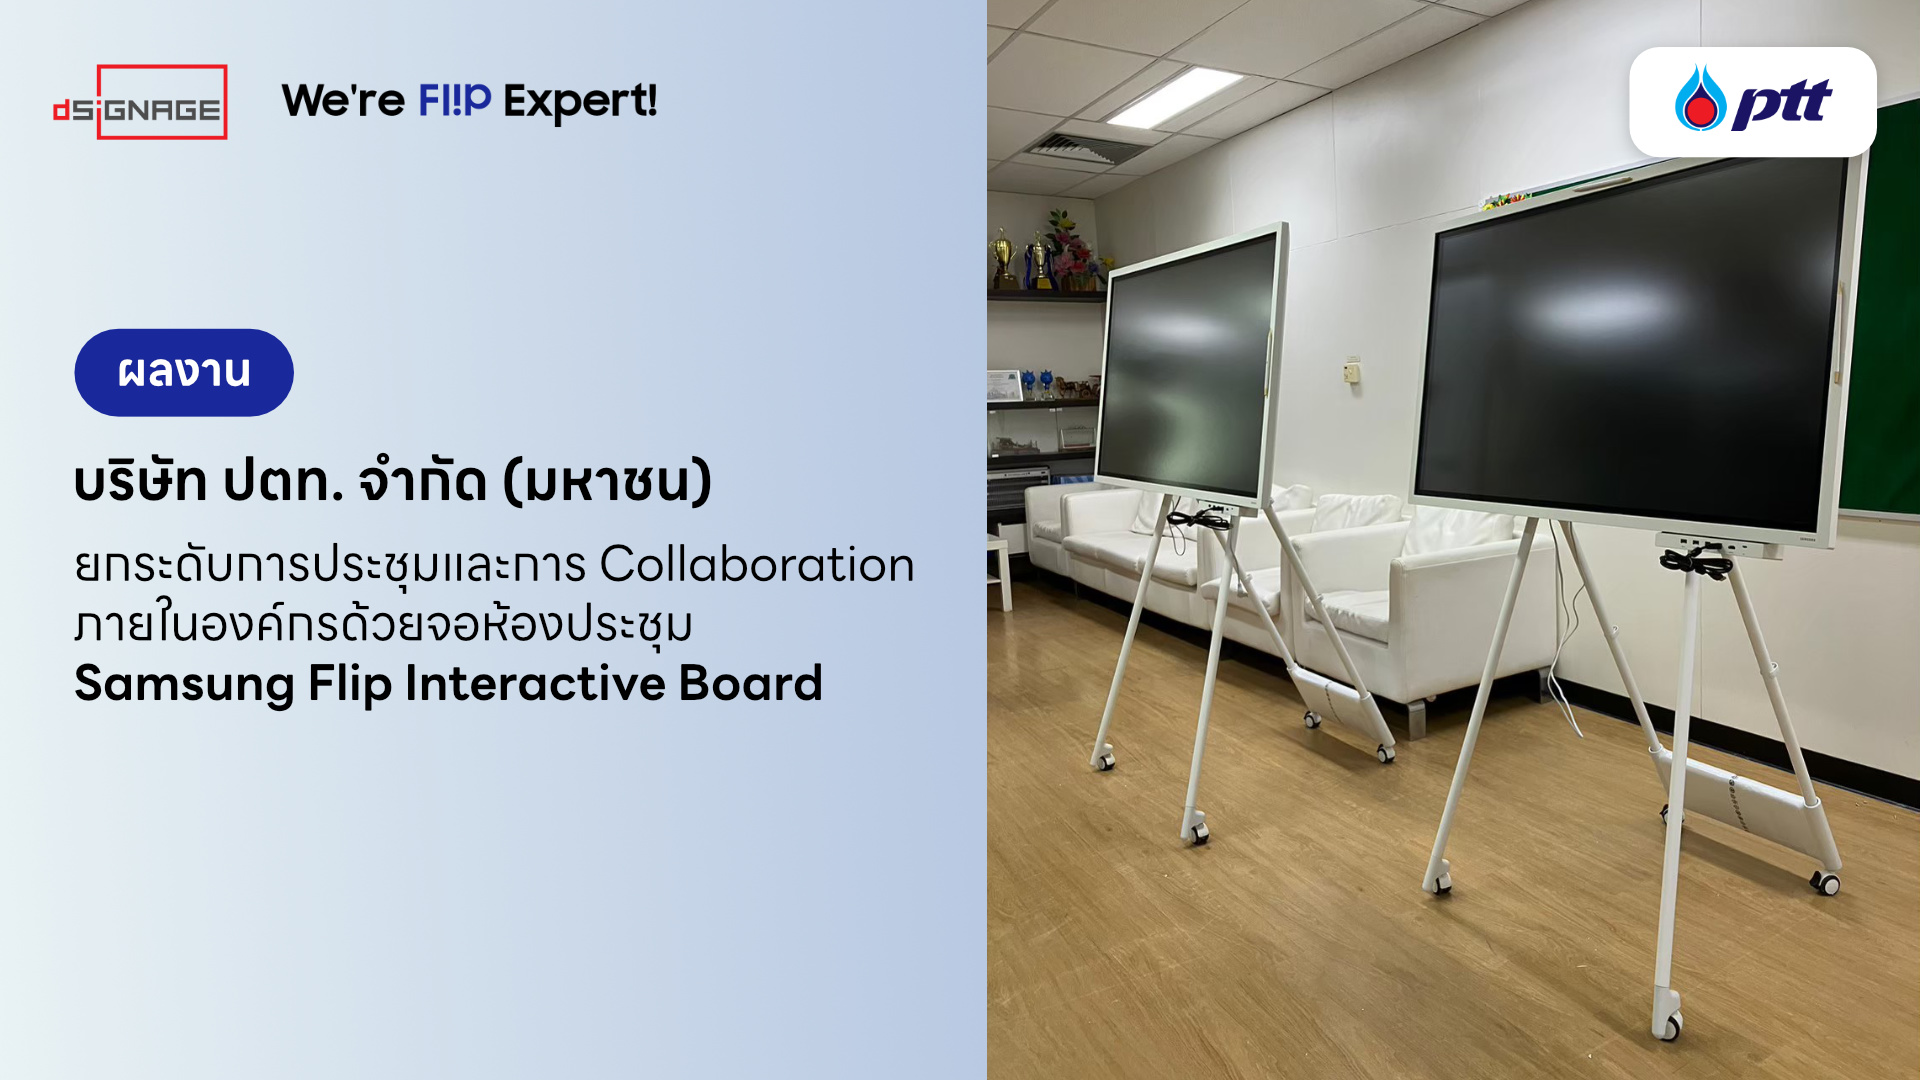 บริษัท ปตท. จำกัด (มหาชน) ยกระดับการประชุมและการ Collaboration ภายในองค์กรด้วยจอ Samsung Flip Interactive Board